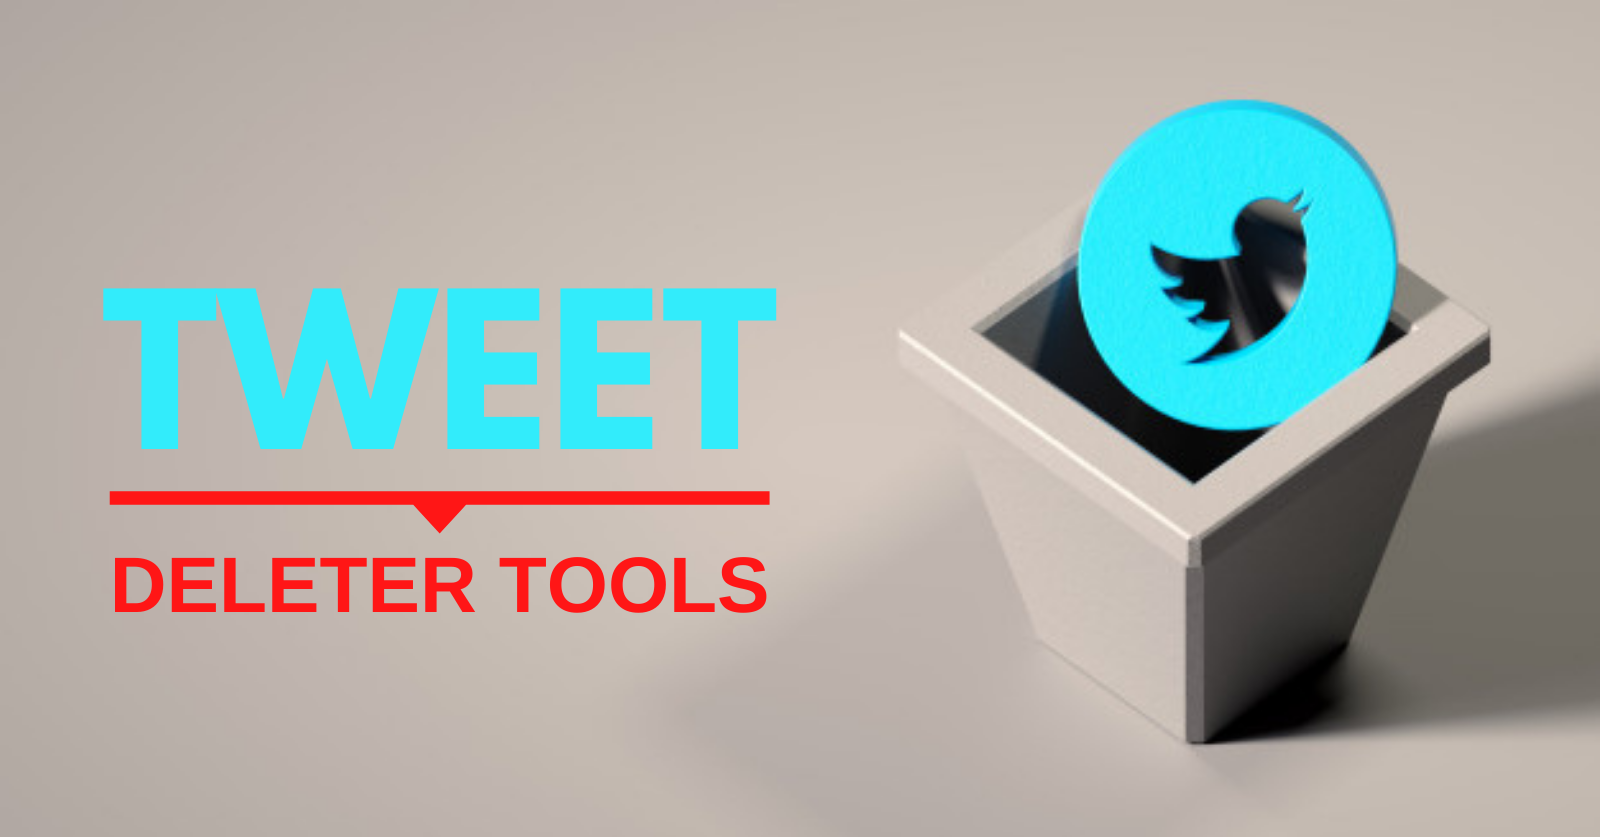 Tweet Deleter Tools